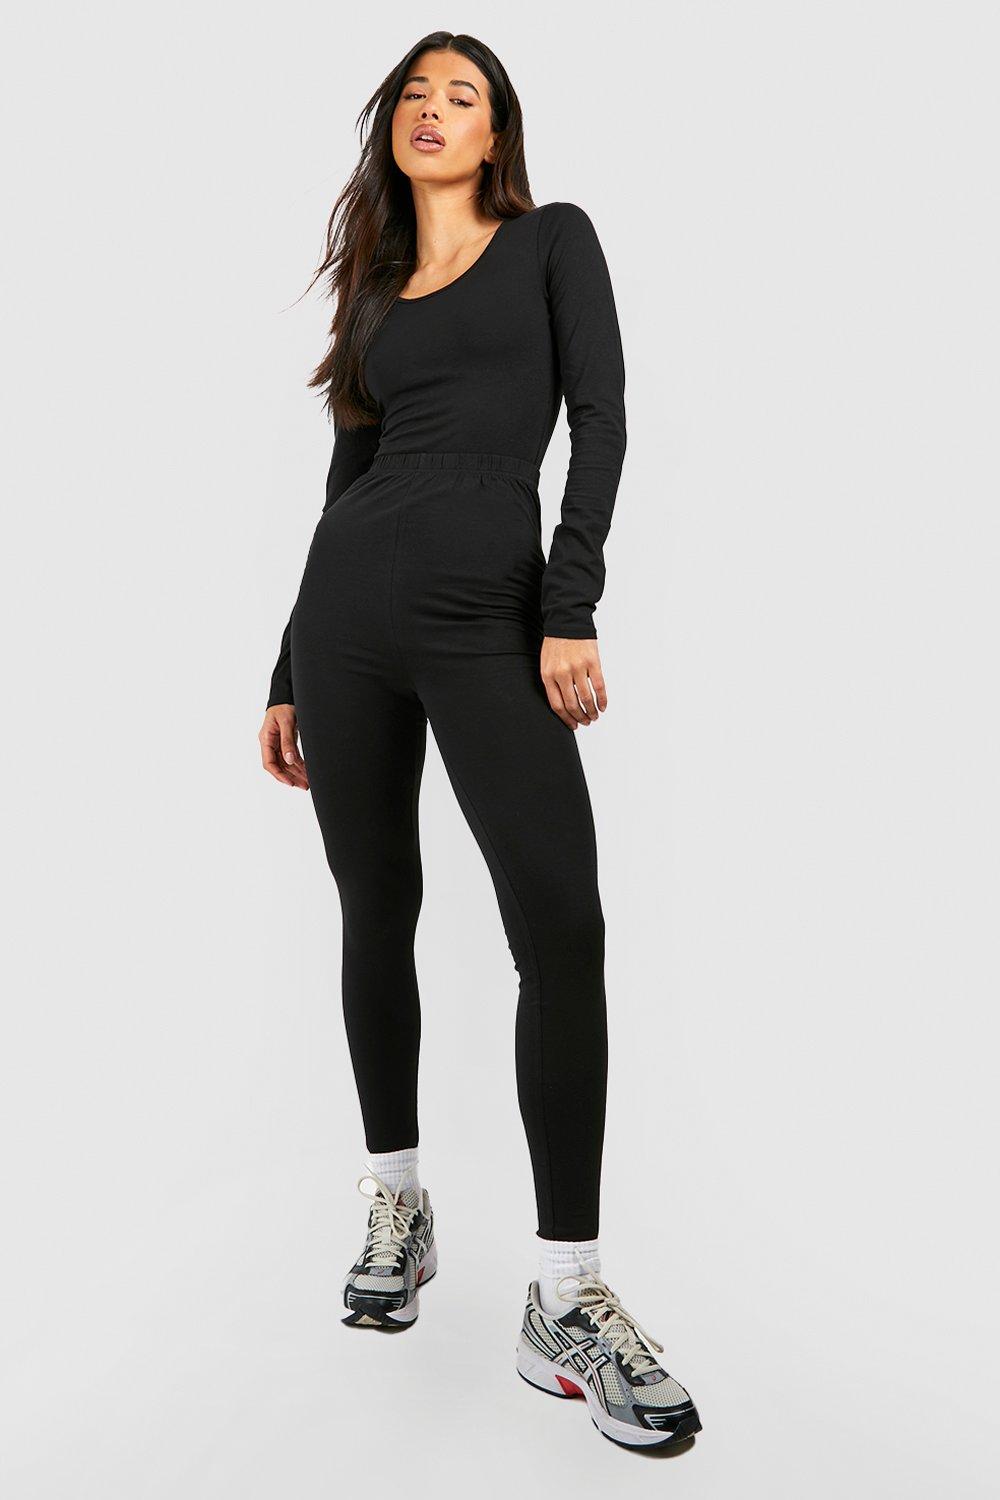 Women's Black Tall Long Sleeve Basic Bodysuit